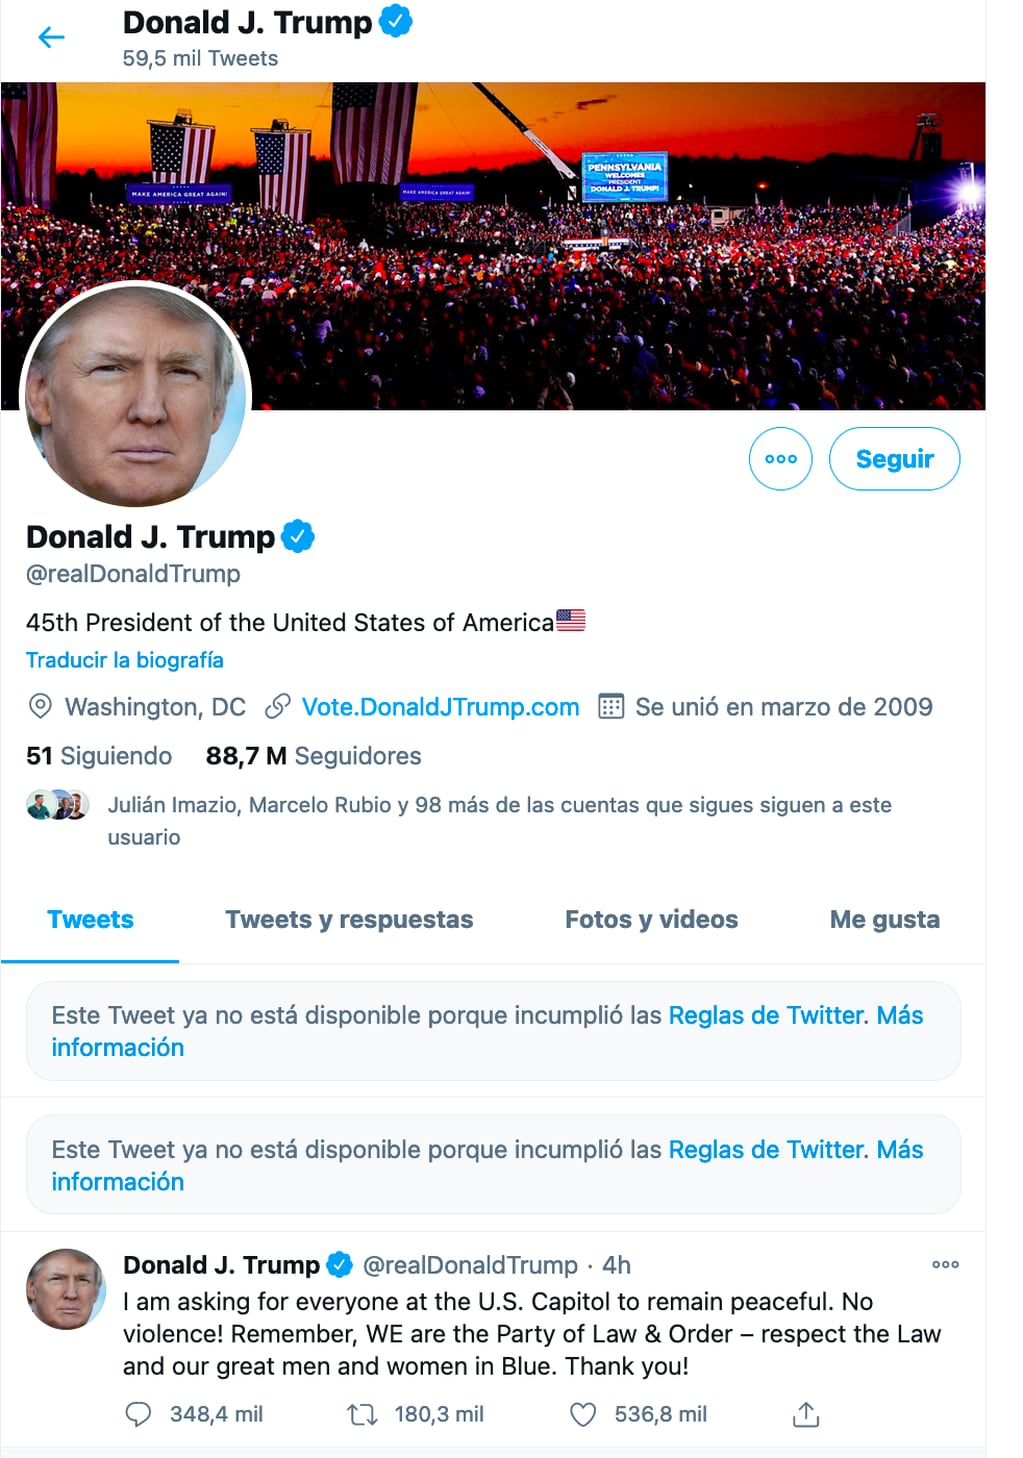 La red social Twitter eliminó algunos mensajes del presidente Donald Trump y bloqueó su cuenta por 12 horas.